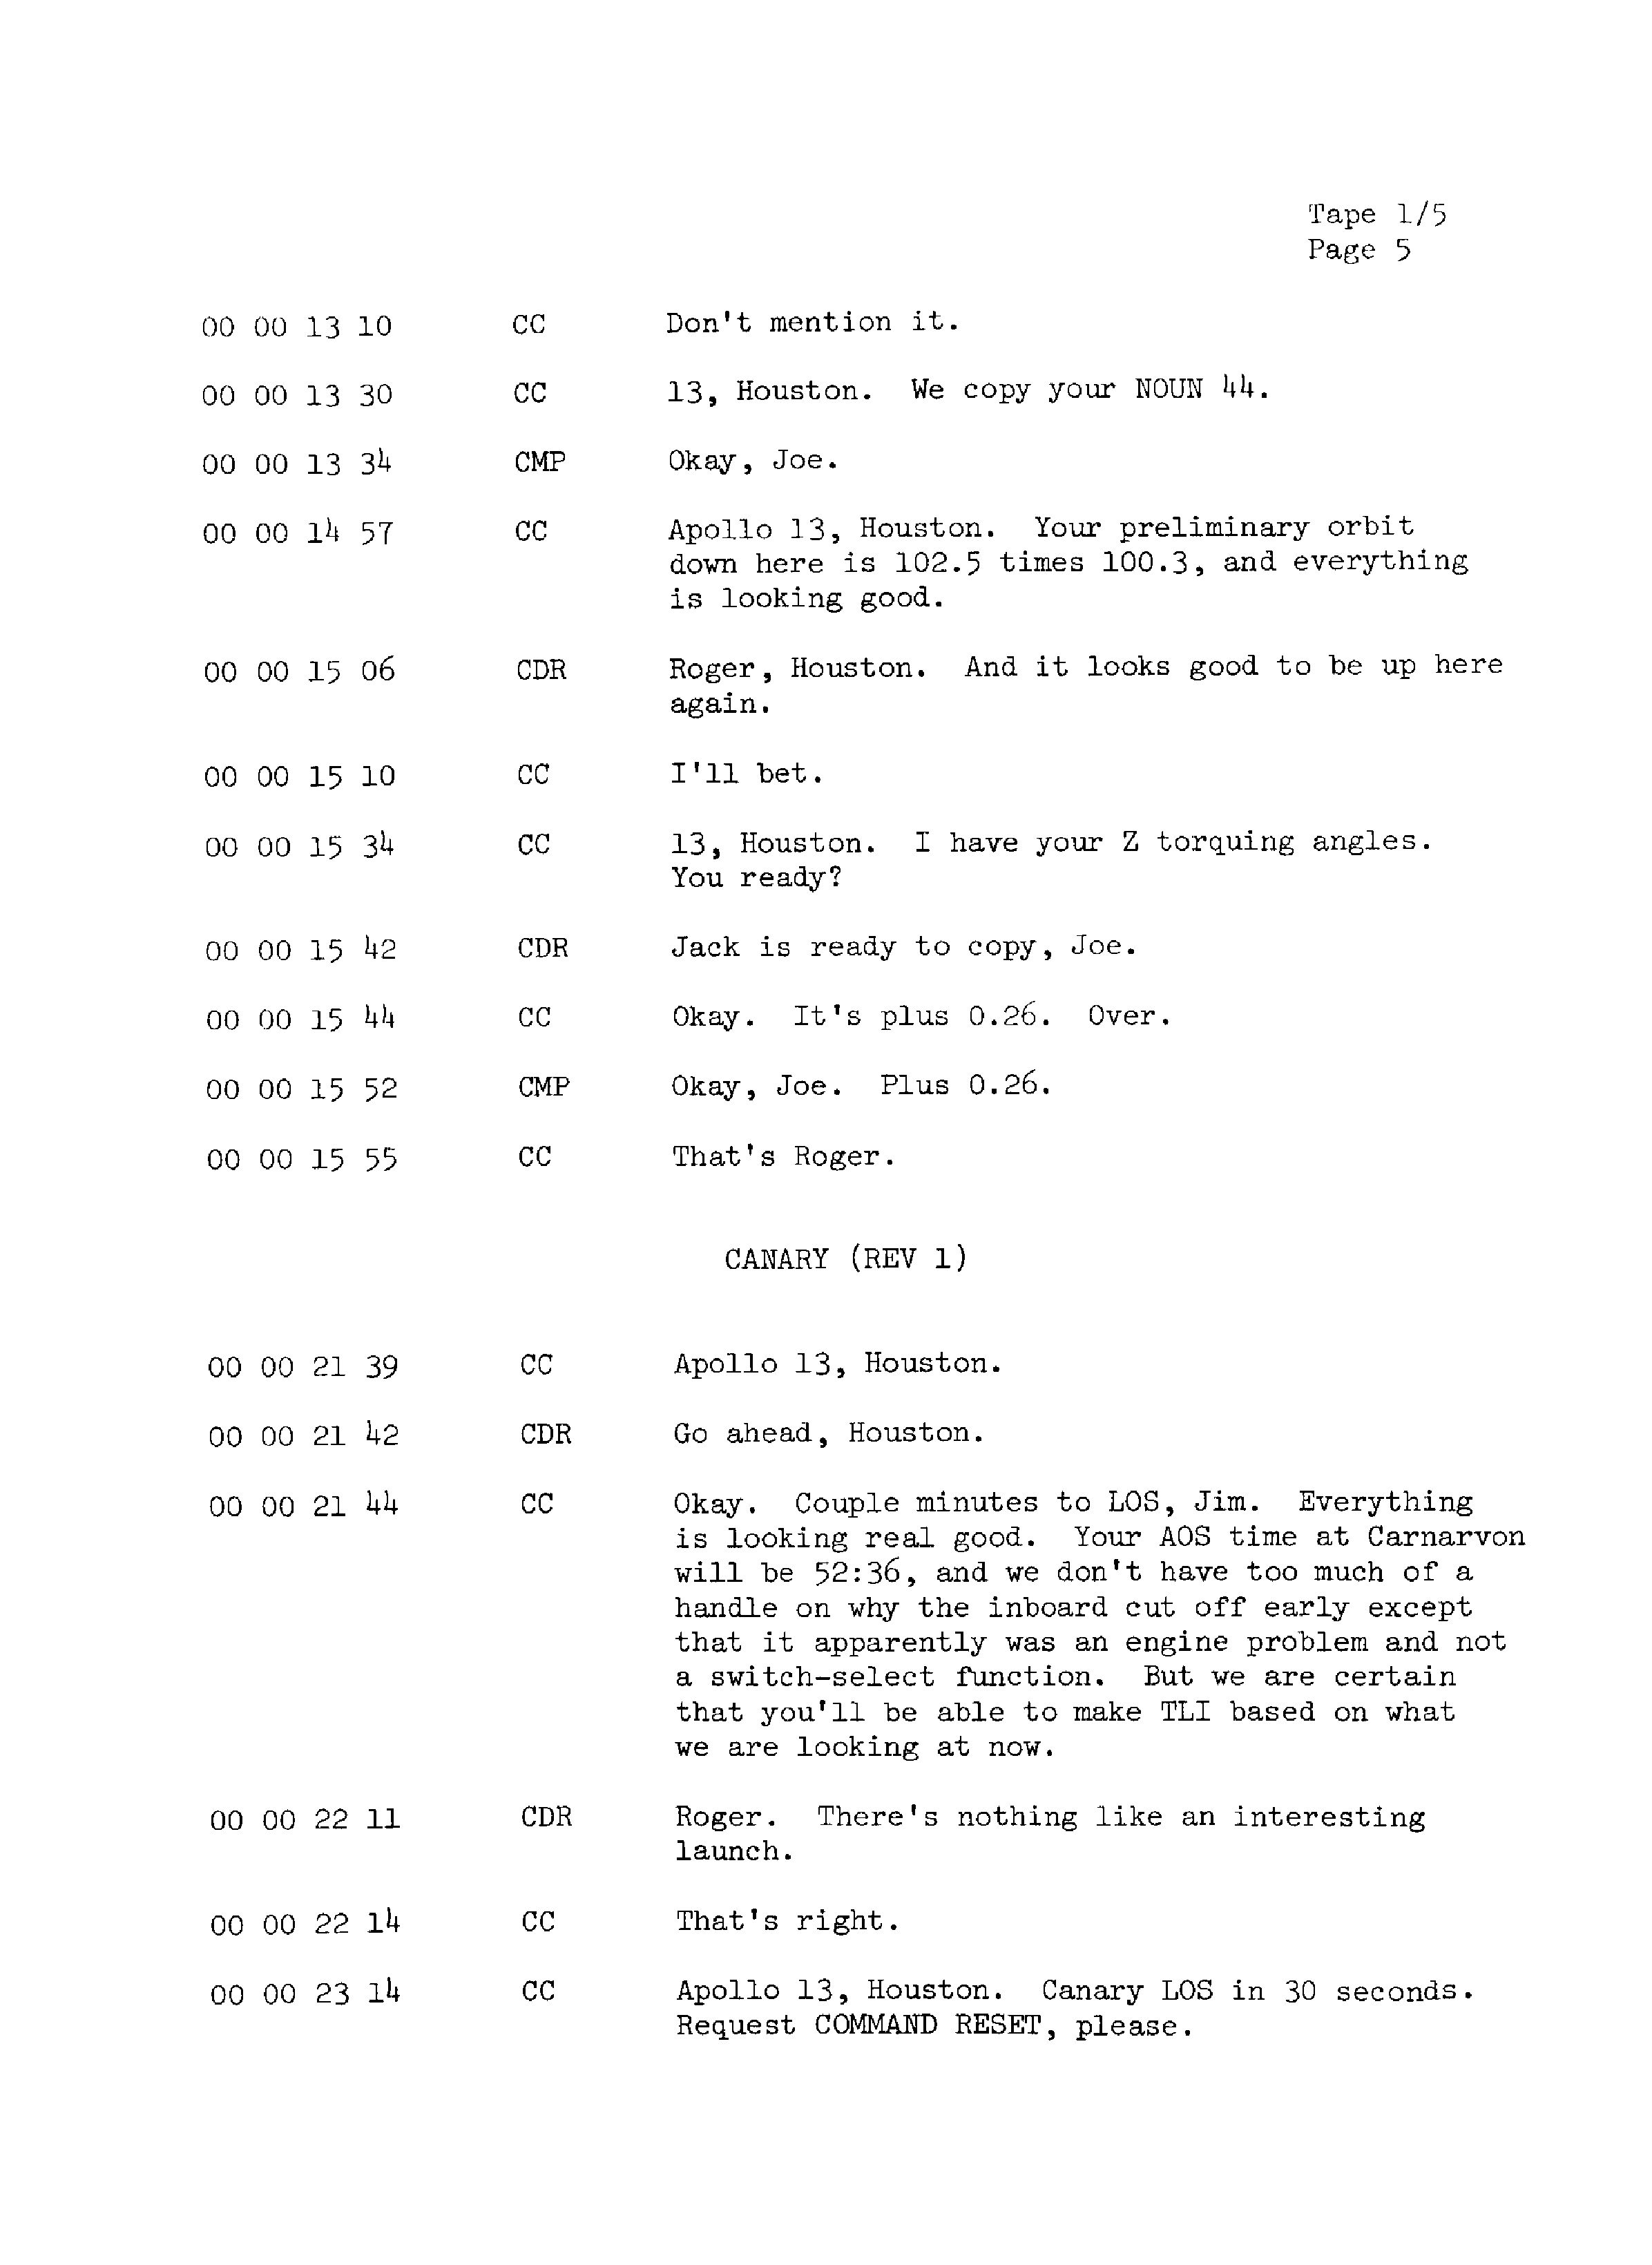 Page 12 of Apollo 13’s original transcript